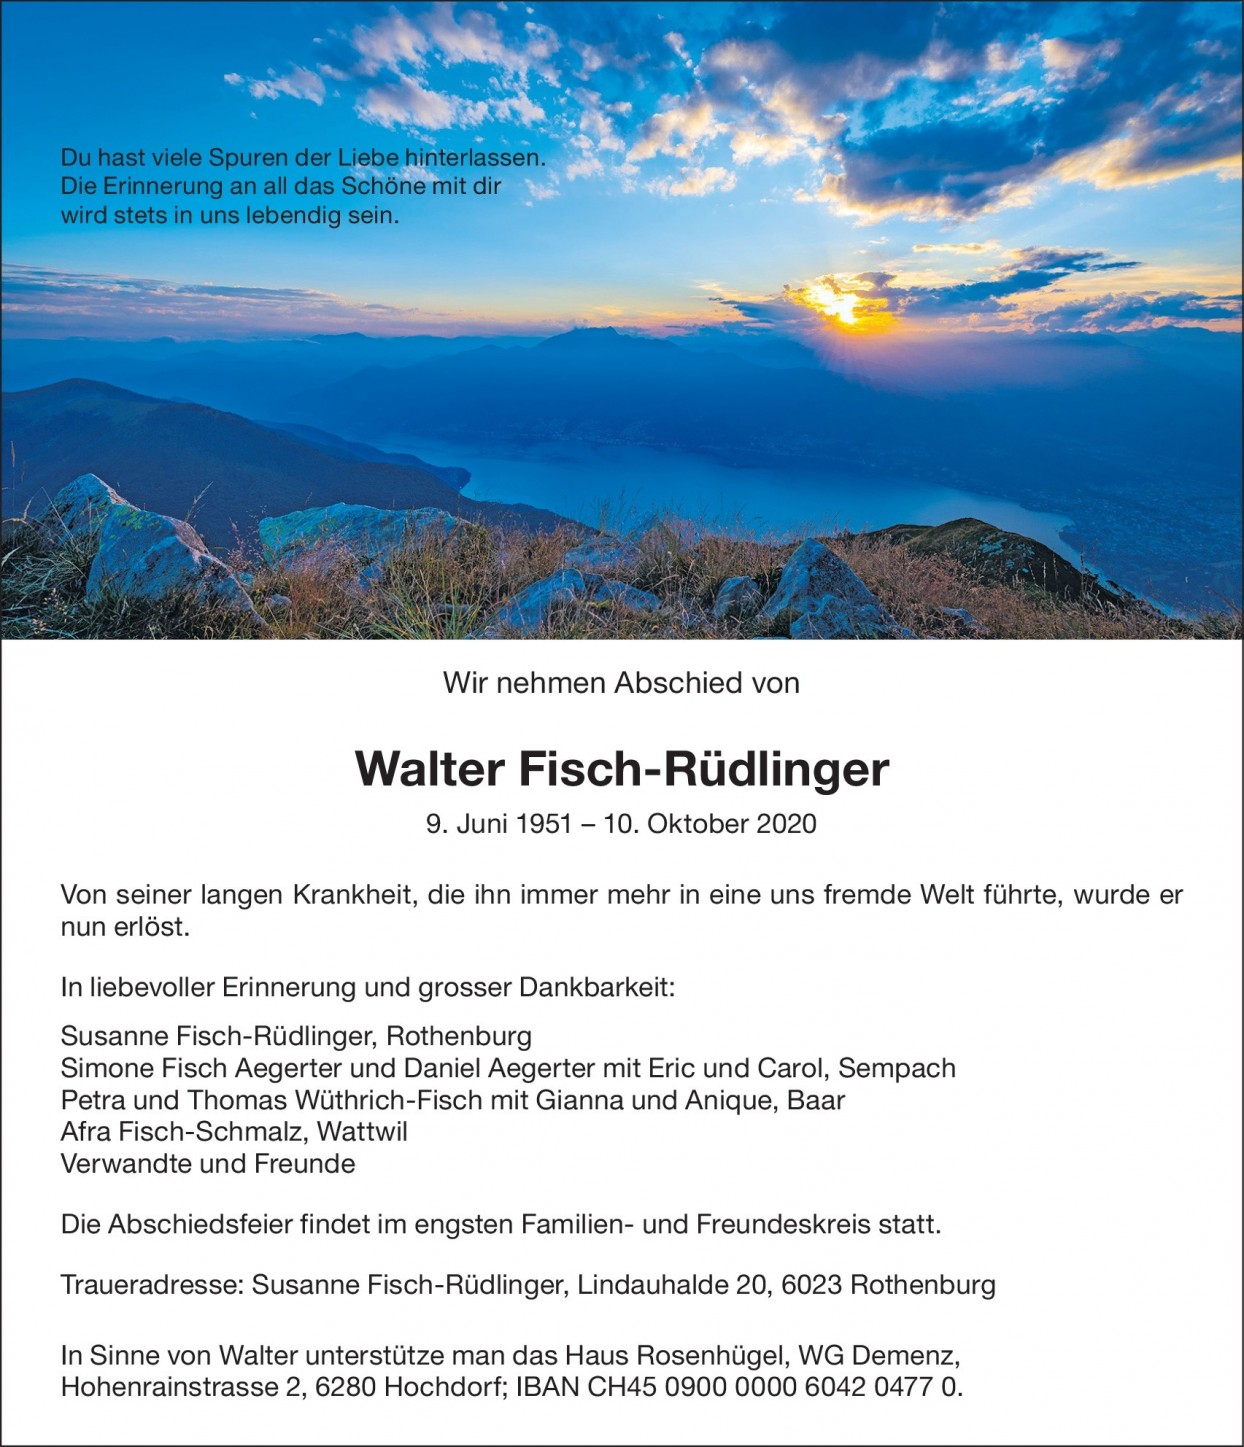 Walter Fisch-Rüdlinger